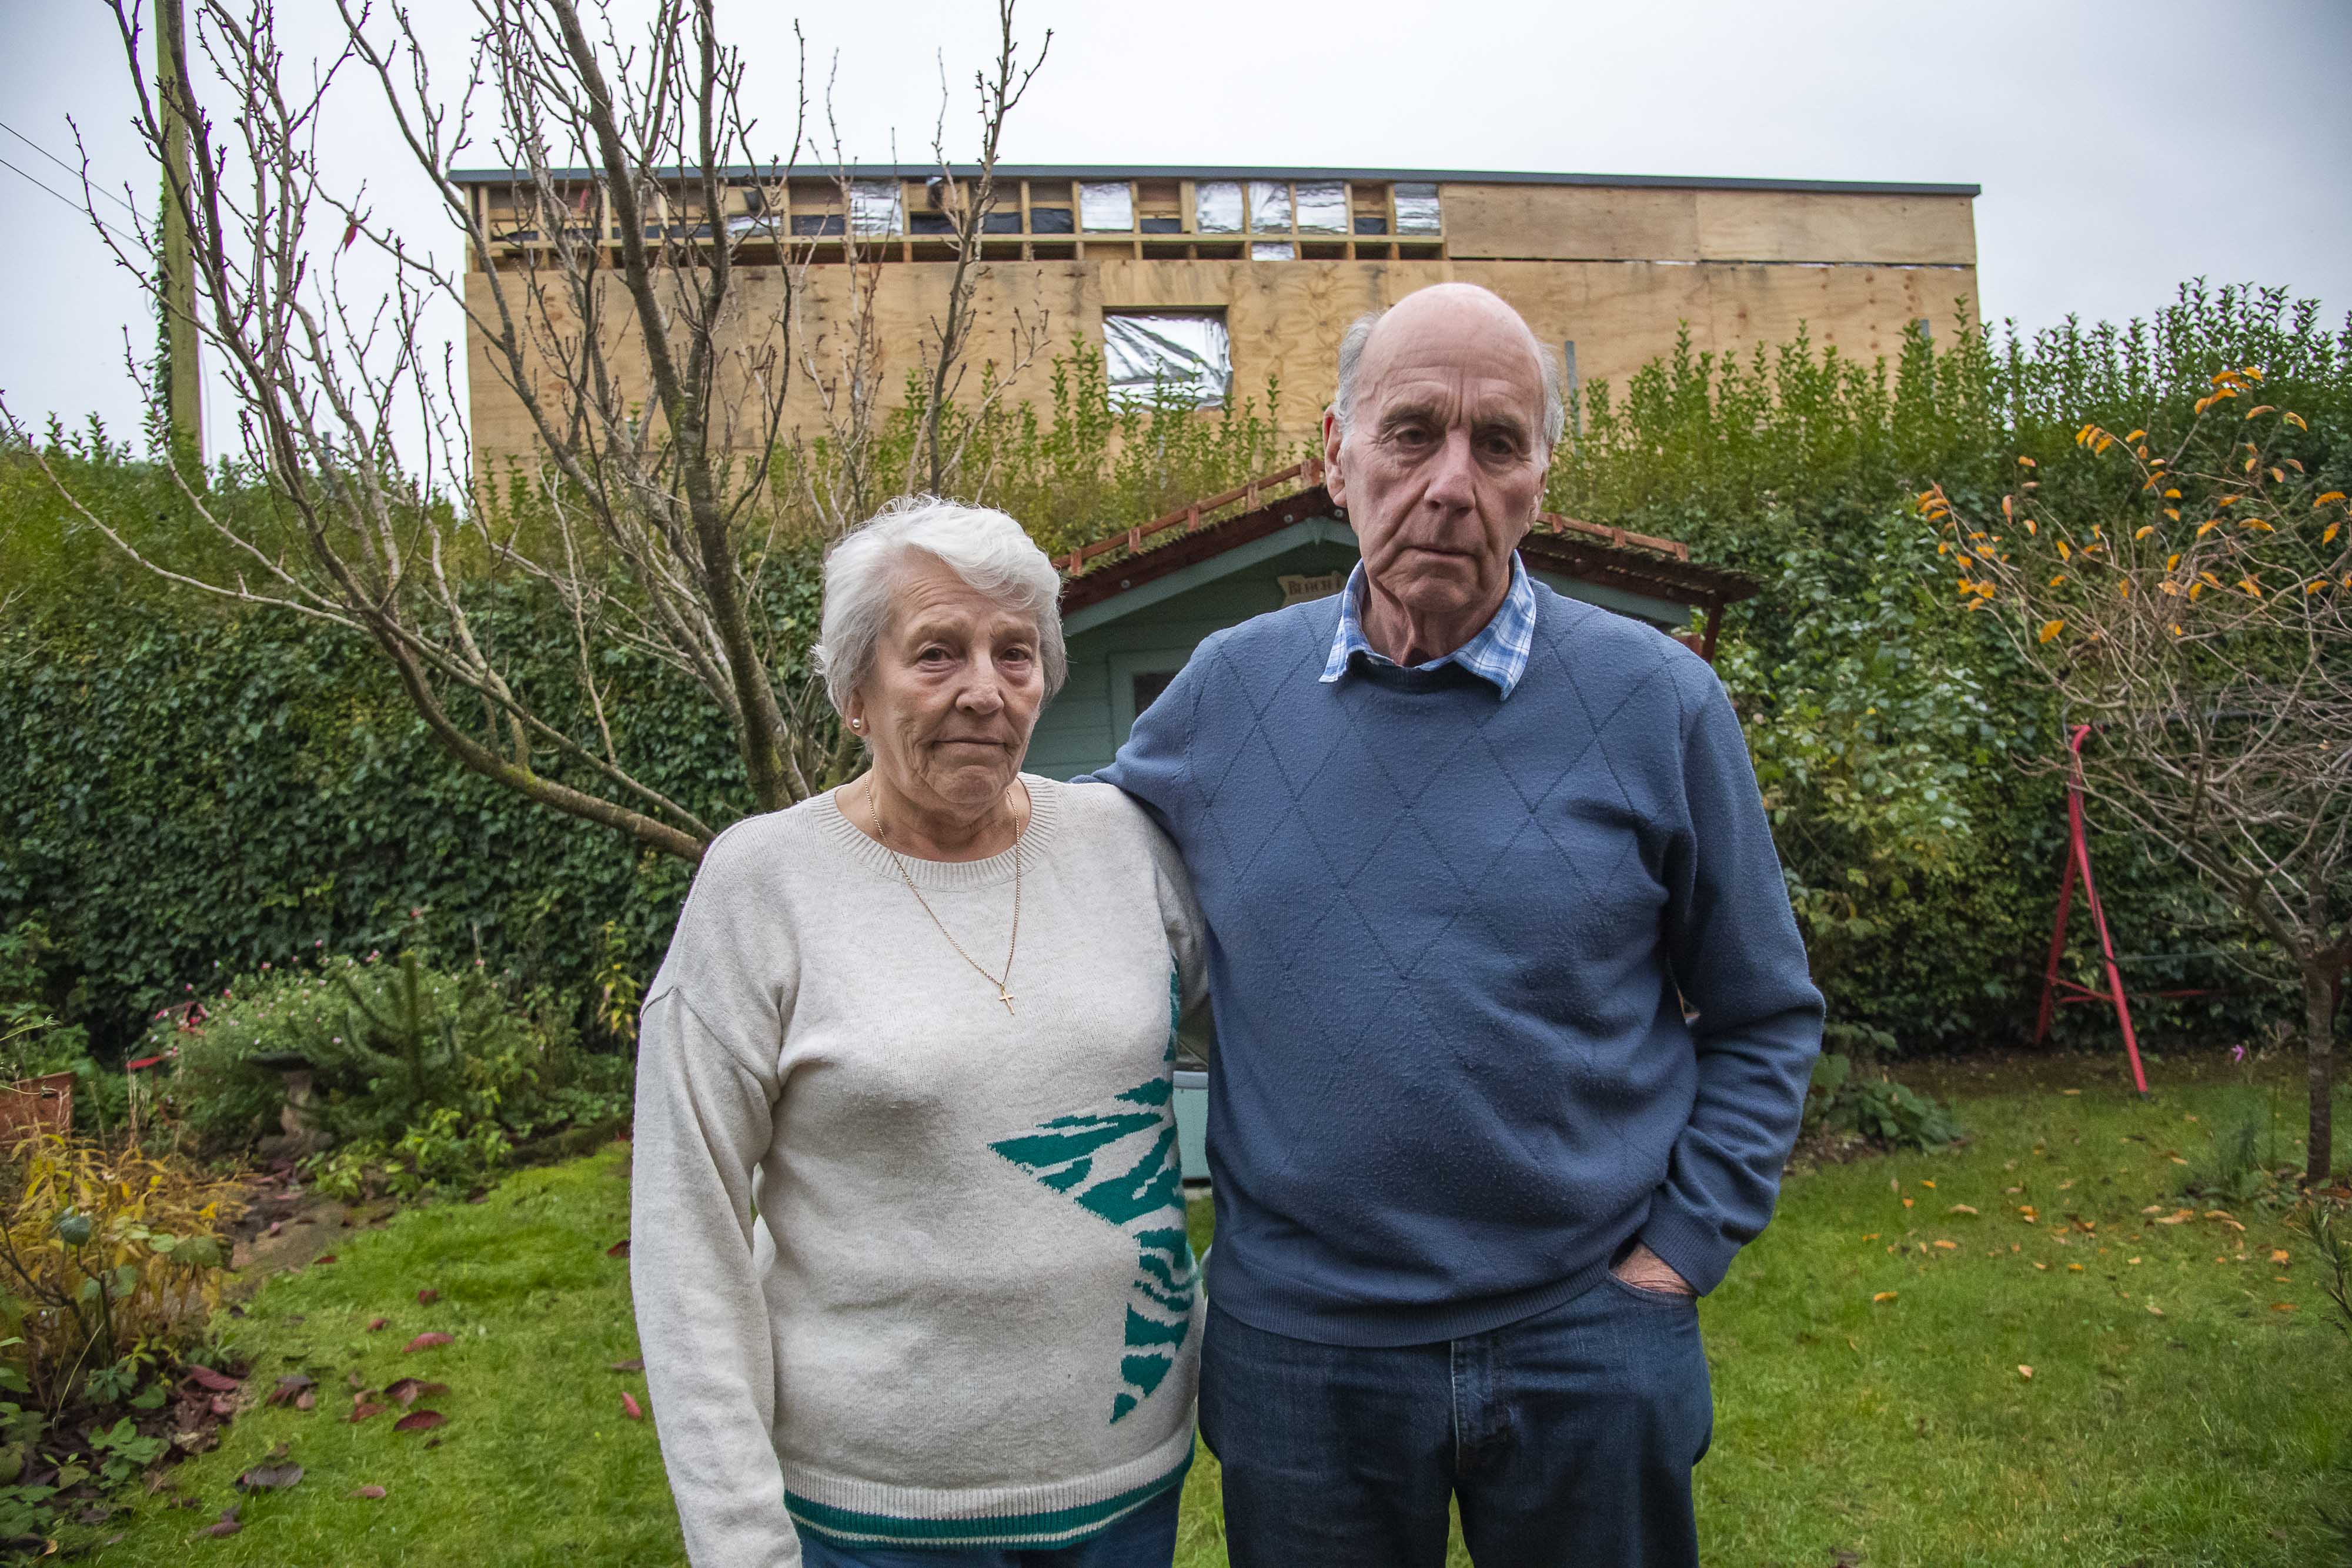 Angry residents slammed the newbild in Dorset